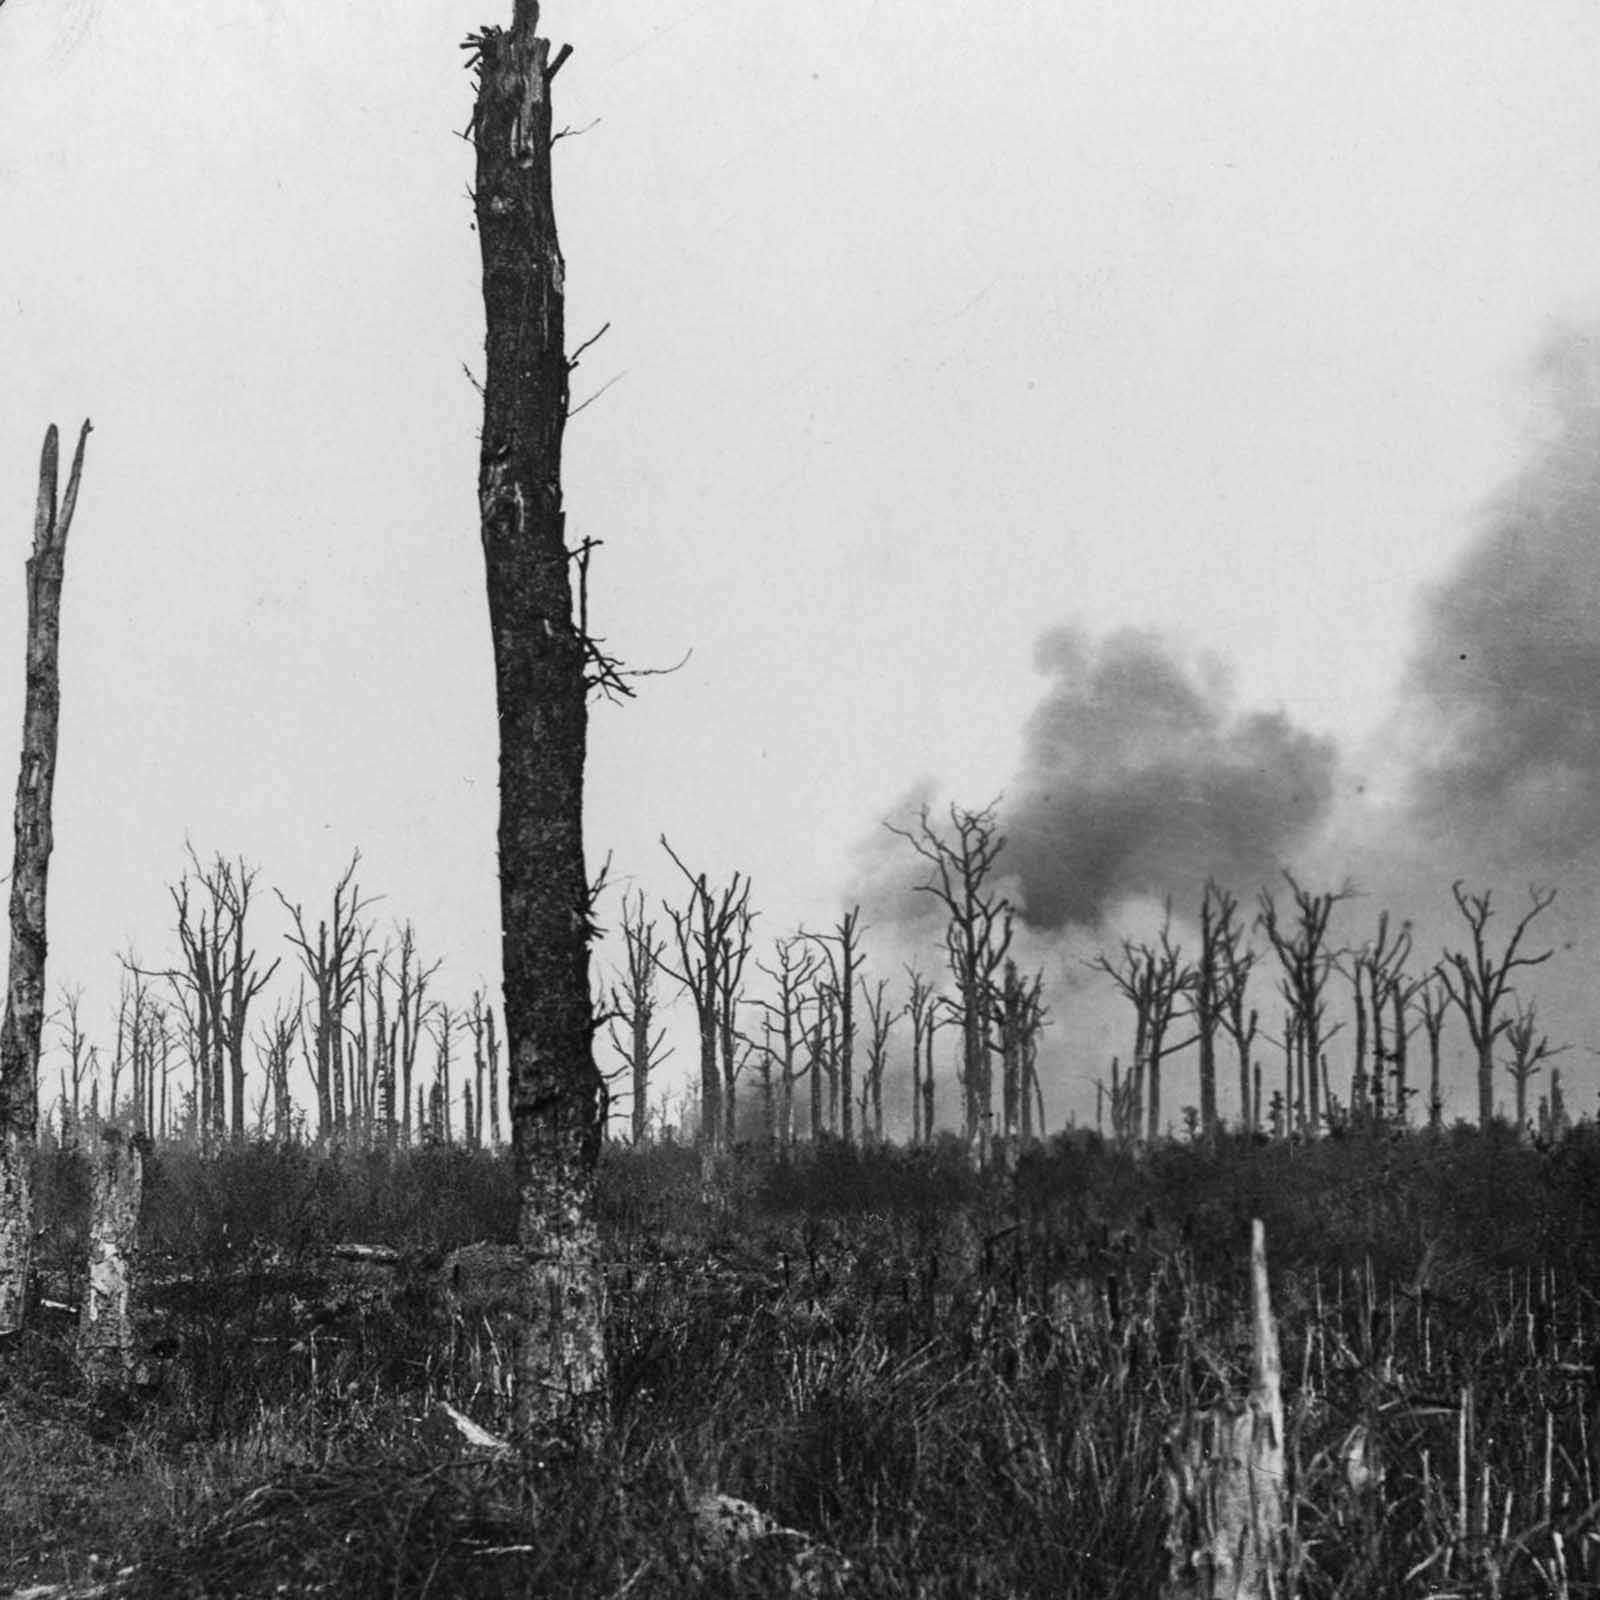 La Bataille de la Somme en photos, 1916